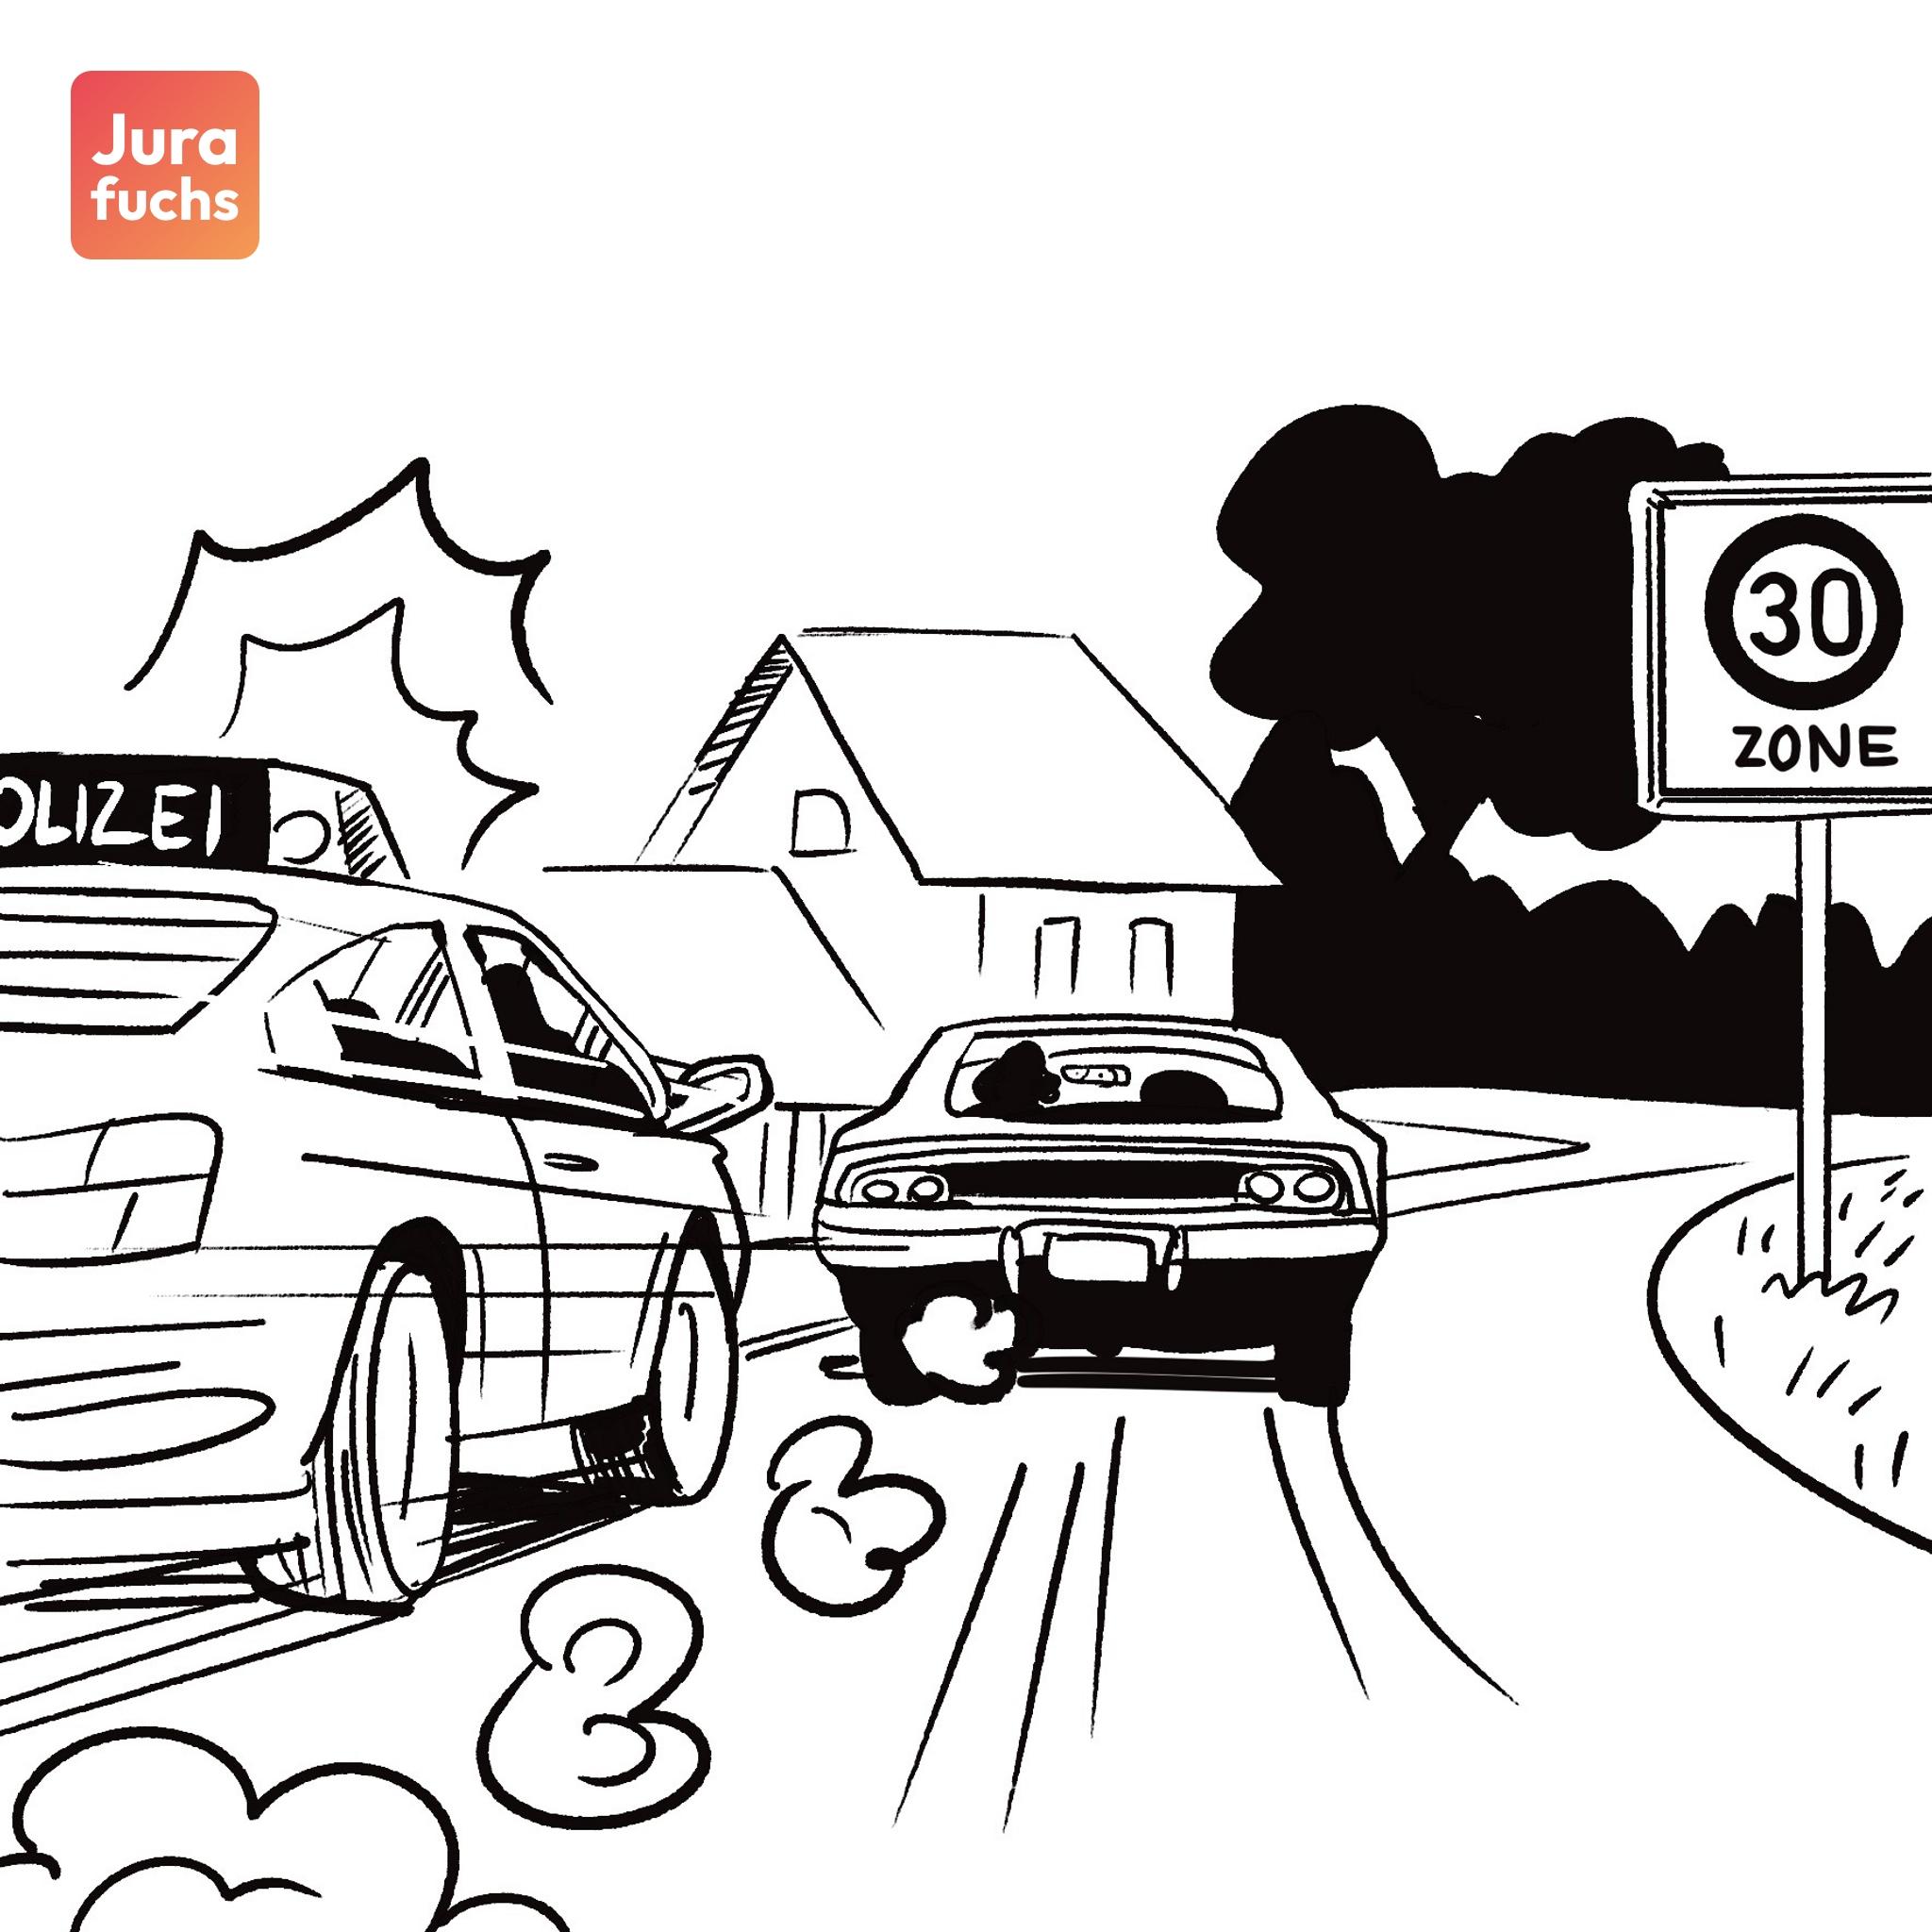 Jurafuchs Illustration: Ein Auto flieht in hoher Geschwindigkeit in einer 30er Zone vor der Polizei. 